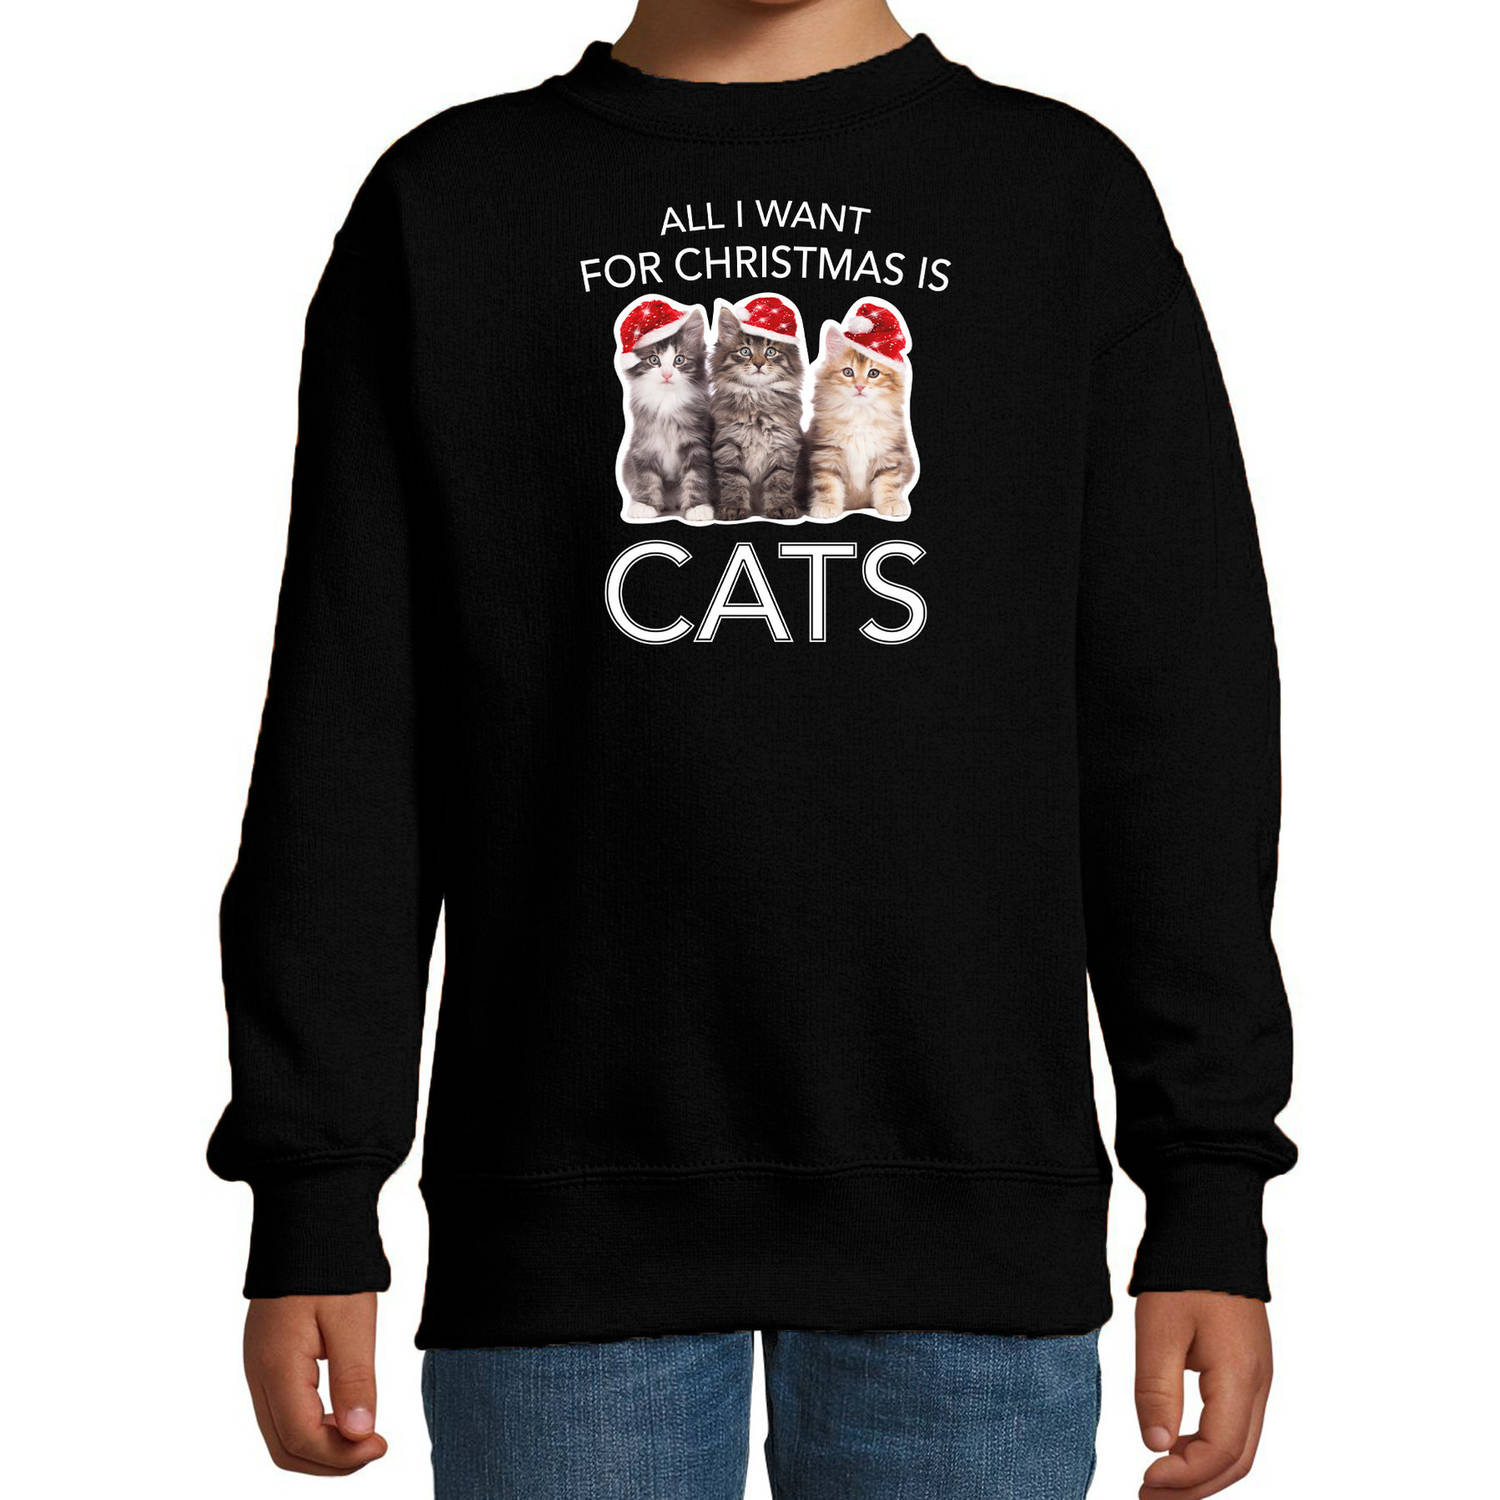 Zwarte Kersttrui / Kerstkleding All I want for christmas is cats voor kinderen 5-6 jaar (110/116) - kerst truien kind